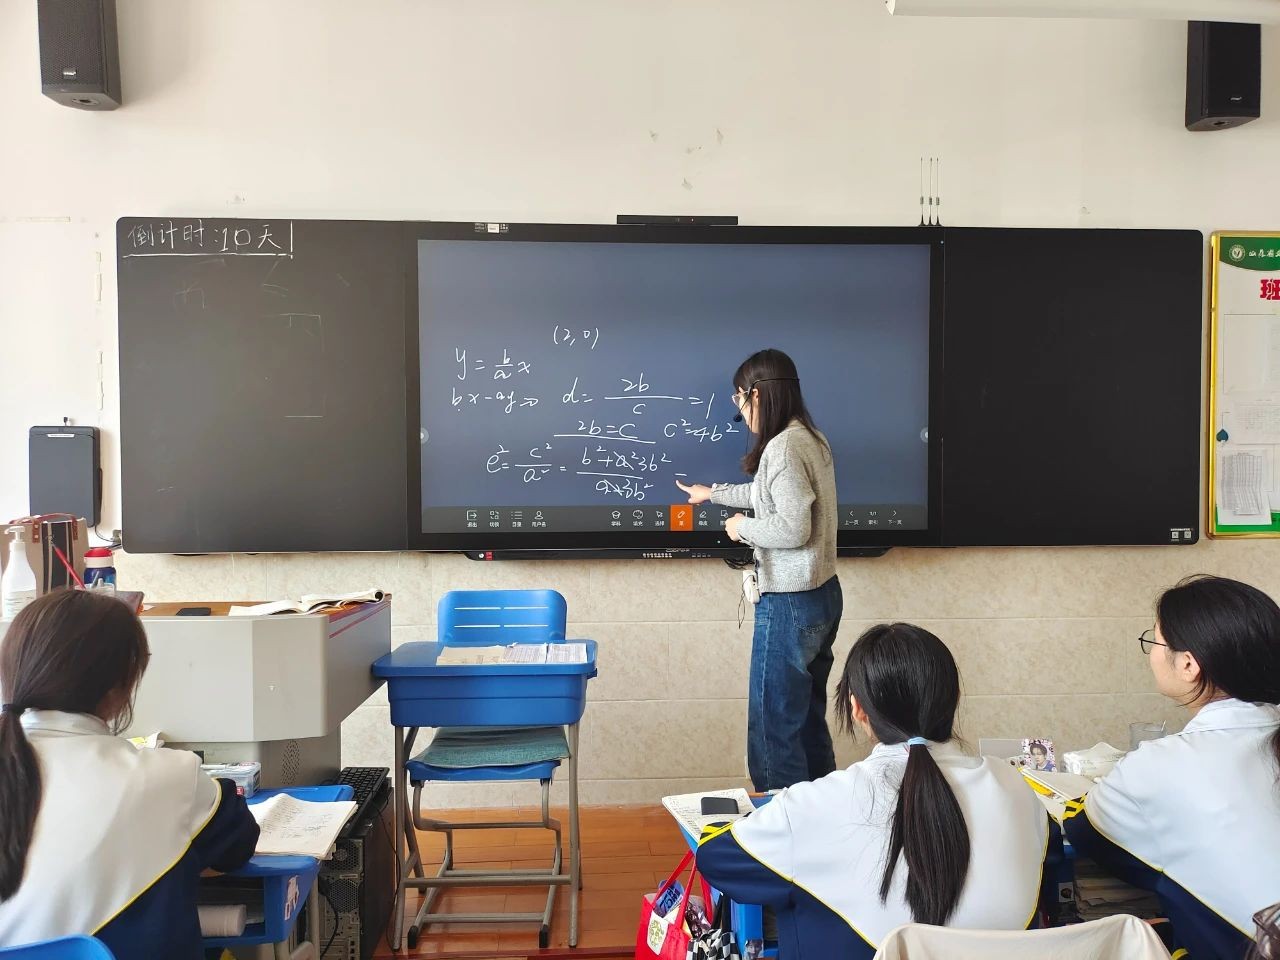 智慧黑板全面升级改造 助力打造精致智慧课堂